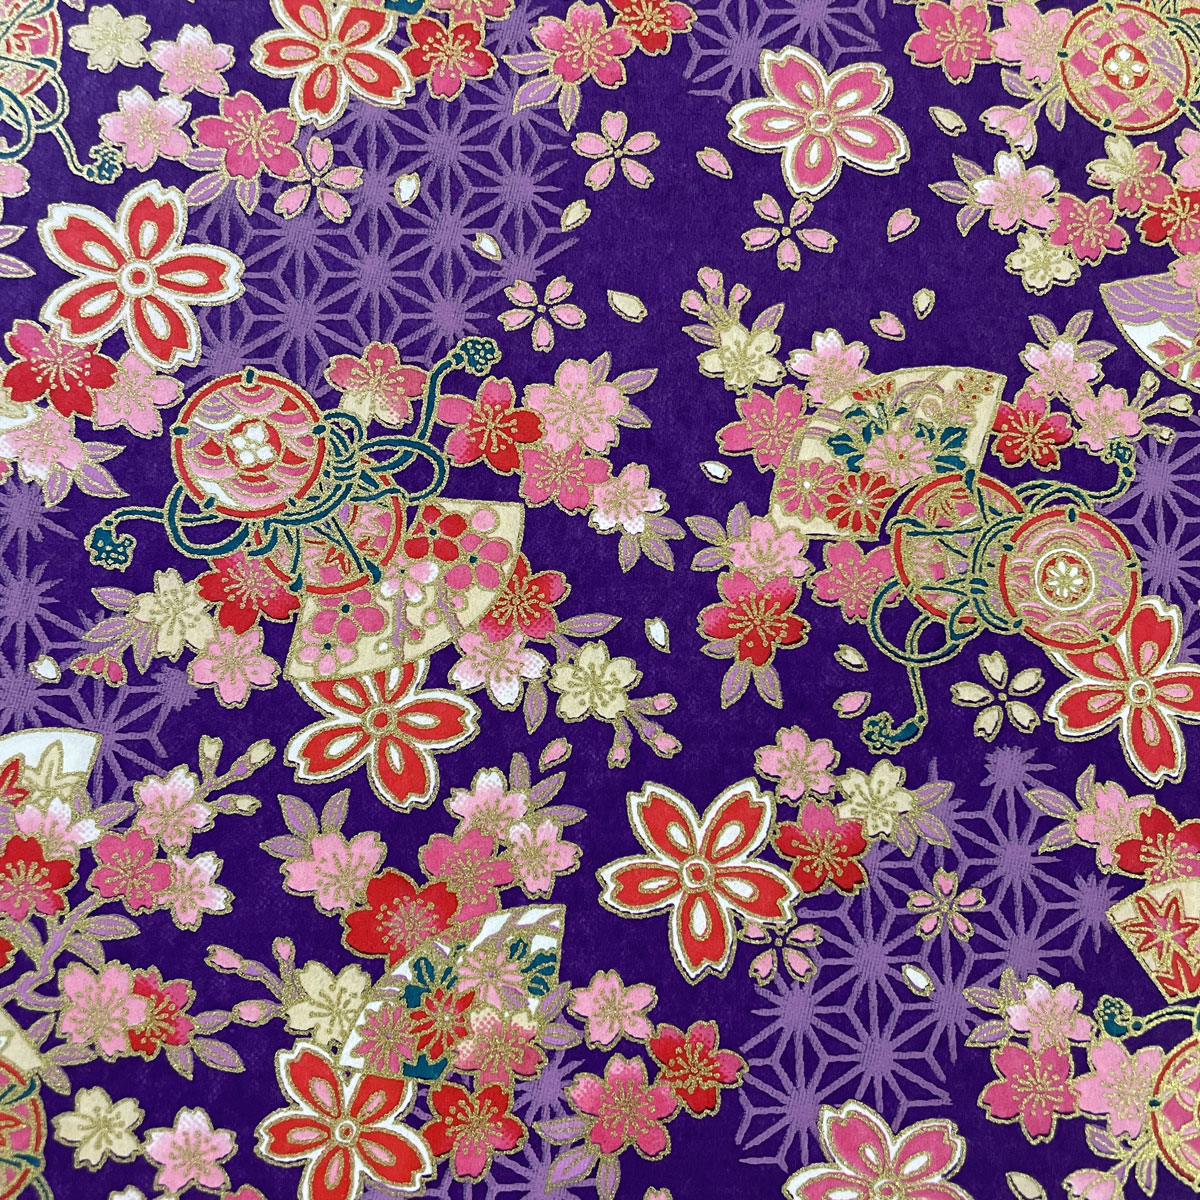  блестящий ... бумага .. тамбурин без тарелочек Sakura листовка лен. лист узор фиолетовый большой размер примерно 63x93cm цветная бумага 